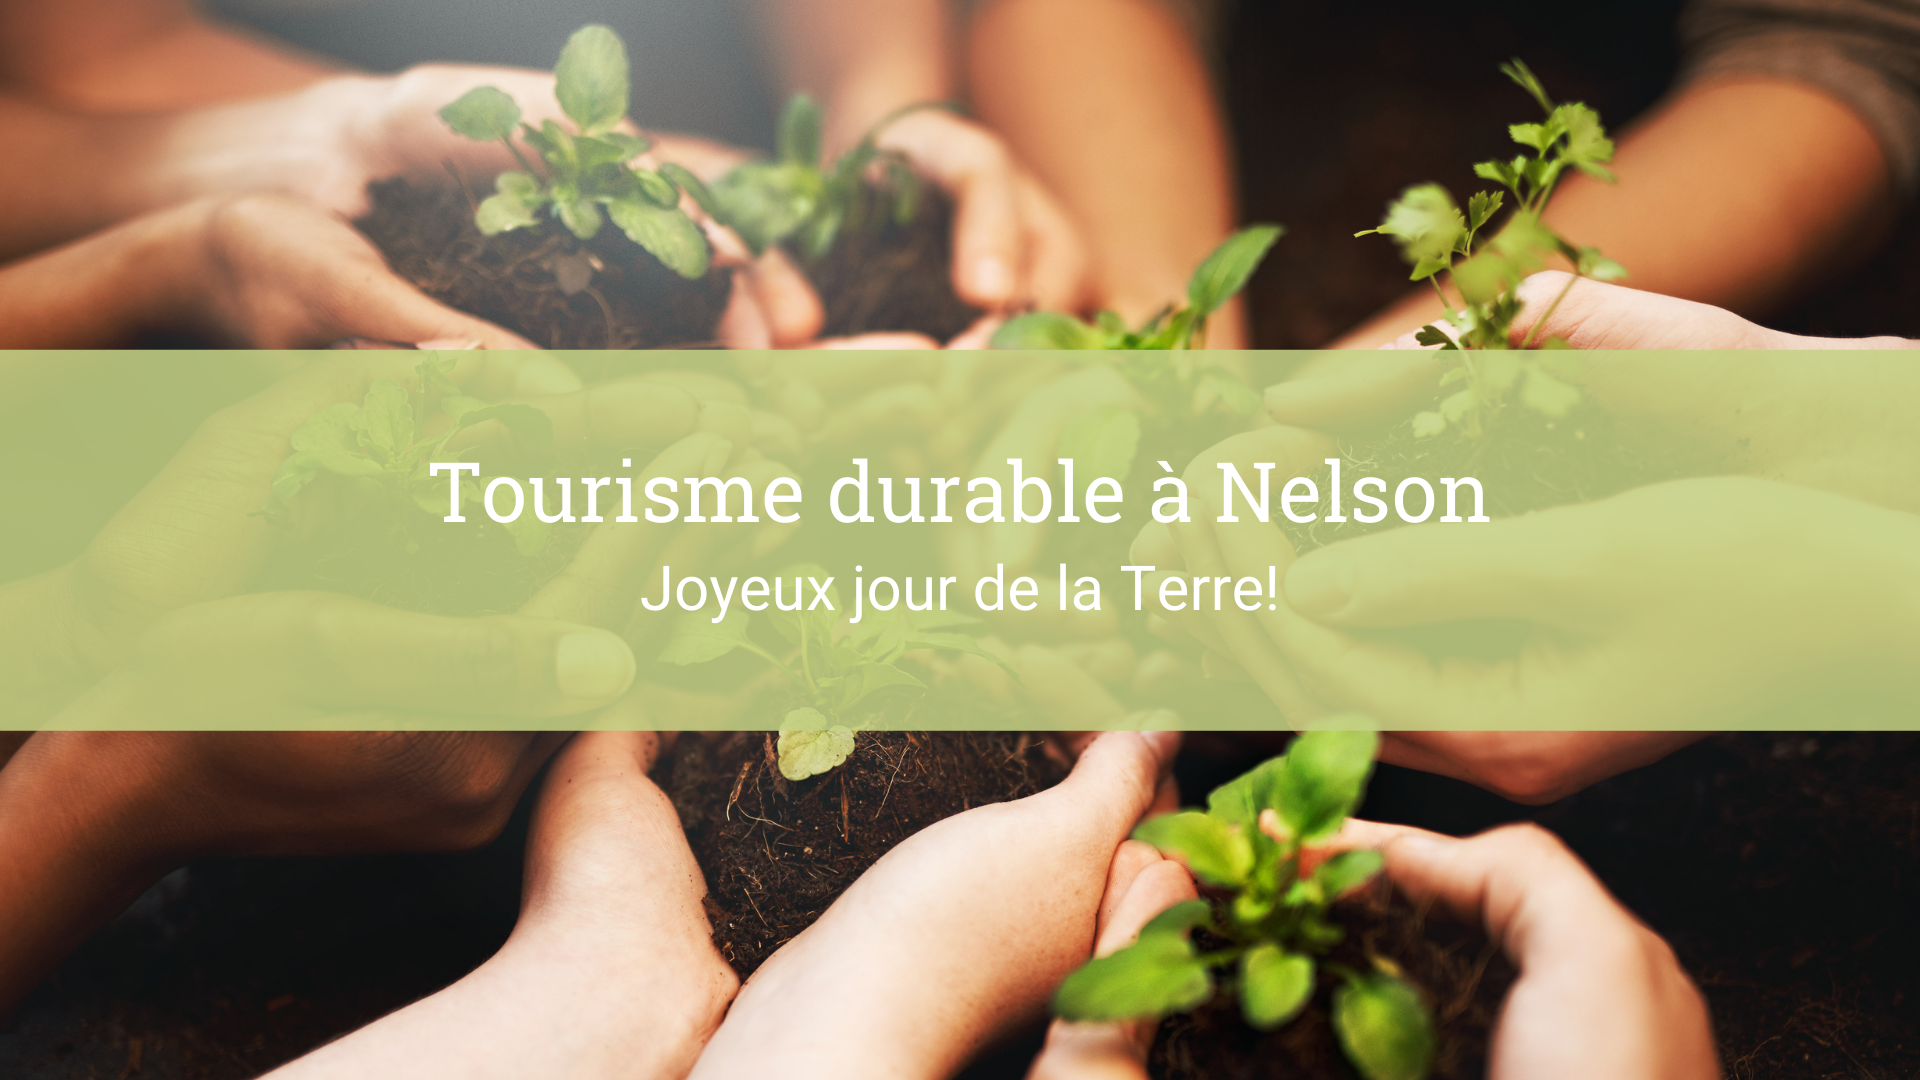 Tourisme durable a Nelson